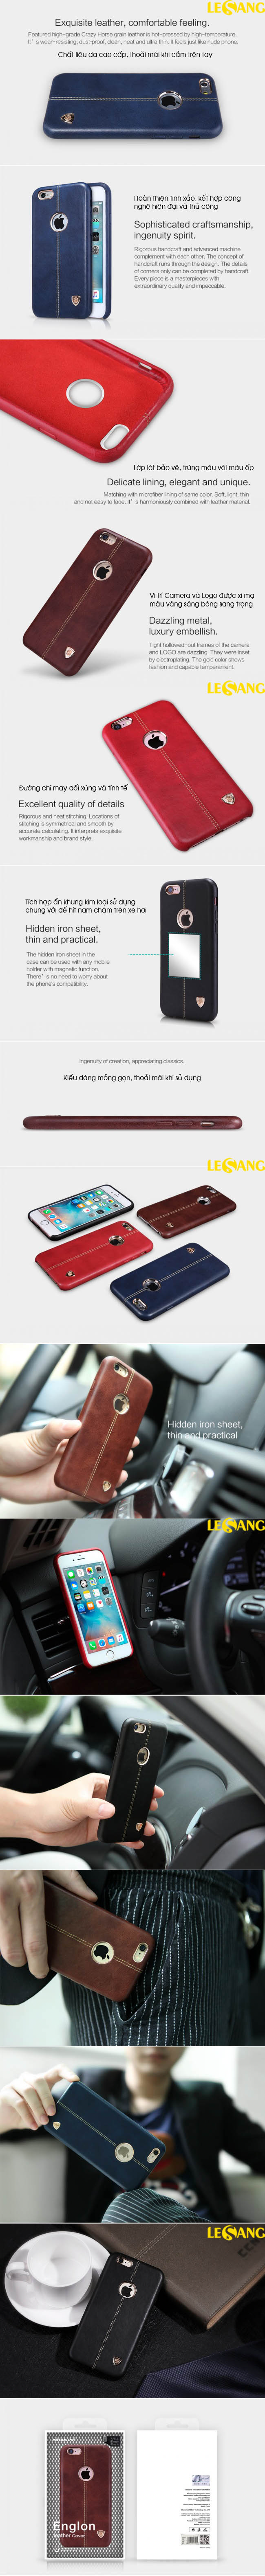 Ốp lưng iPhone 6S Plus / 6 Plus Englon Leather Cover 33